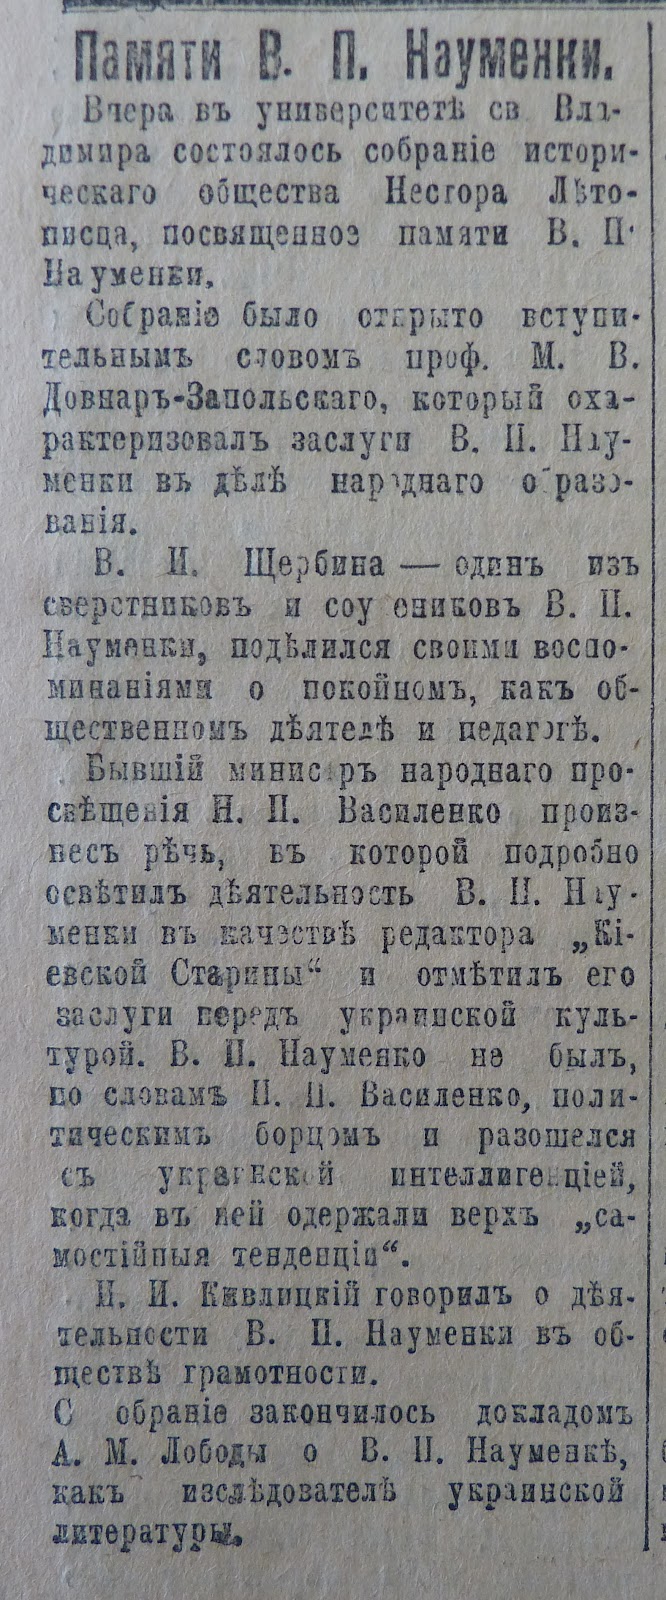 Повідомлення про вшанування пам'яті Володимира Науменка у газеті "Русь" від 13 жовтня 1919-го